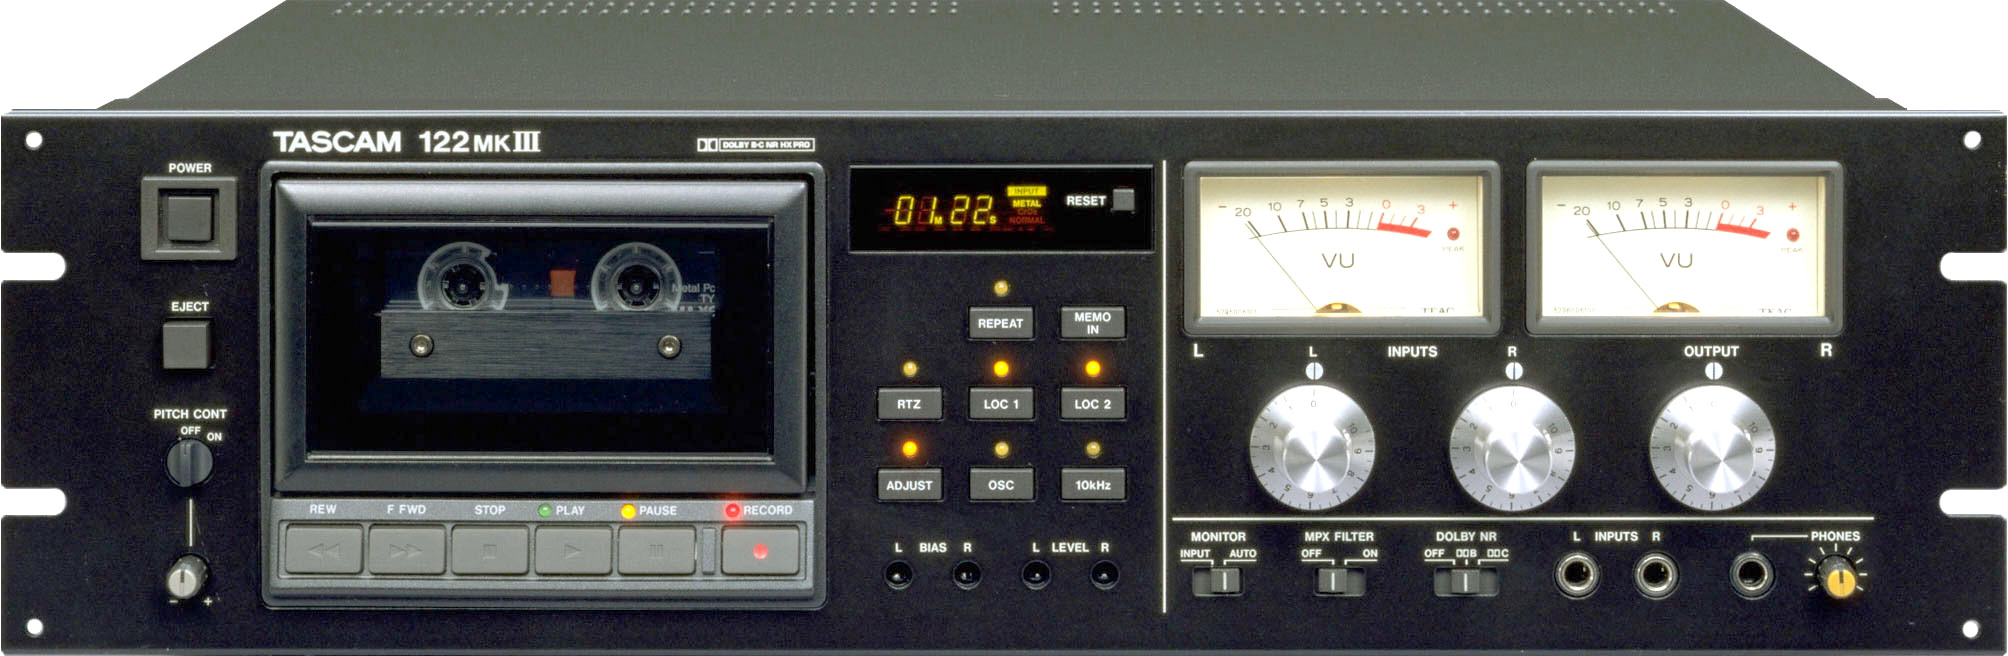 Tascam 122 MK III-1994.jpg